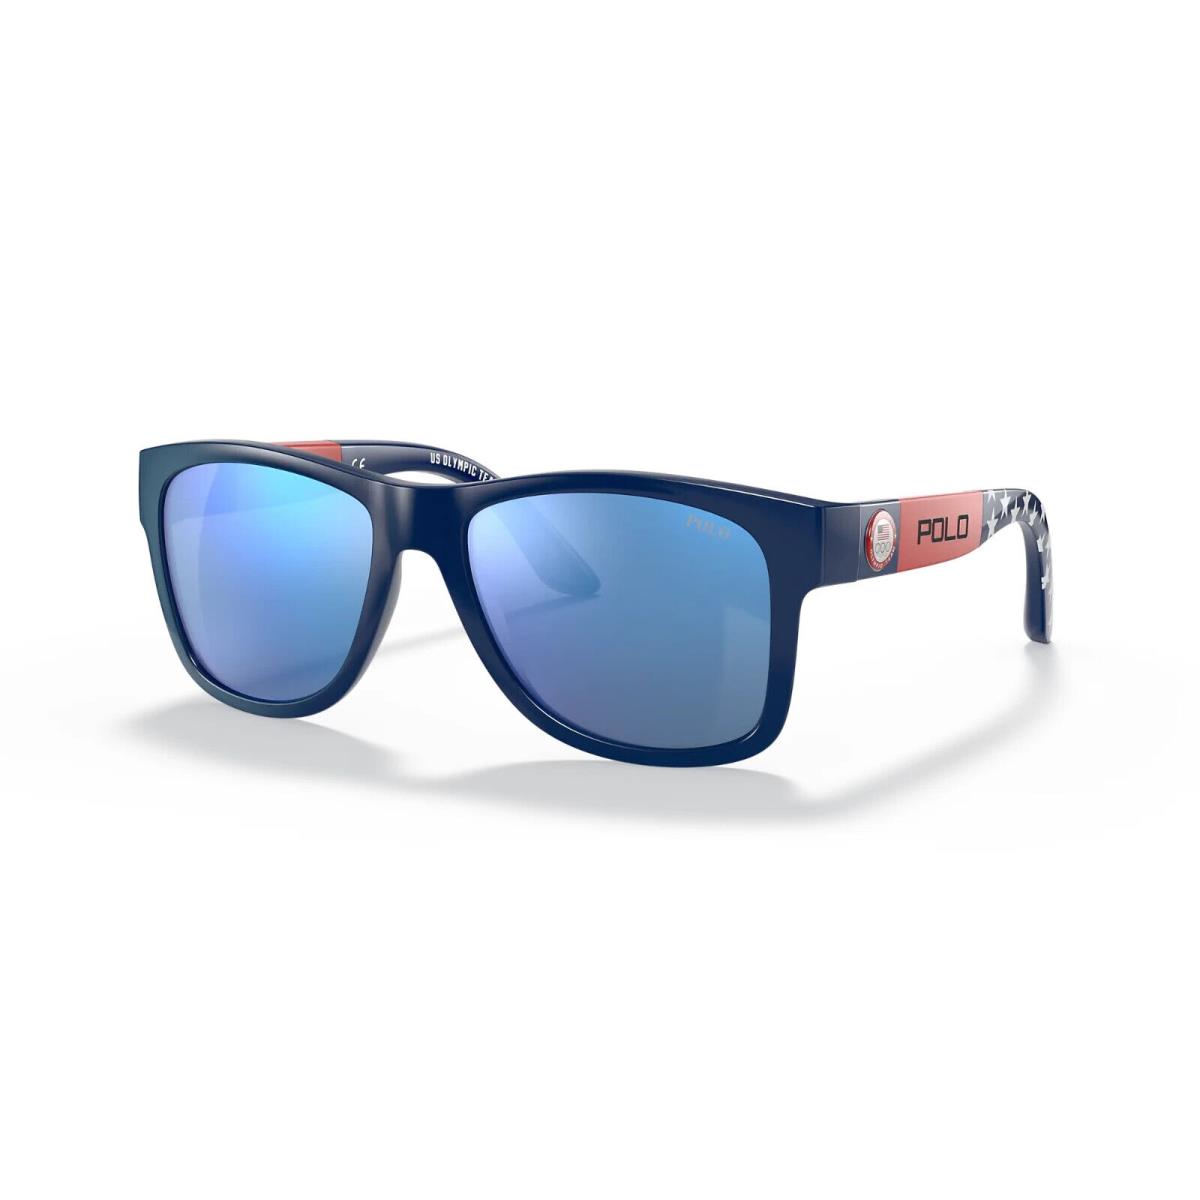 Polo Ralph Lauren S2620 Mens Blue PH4162 Sunglasses 54 mm - Frame: Blue, Lens: Blue